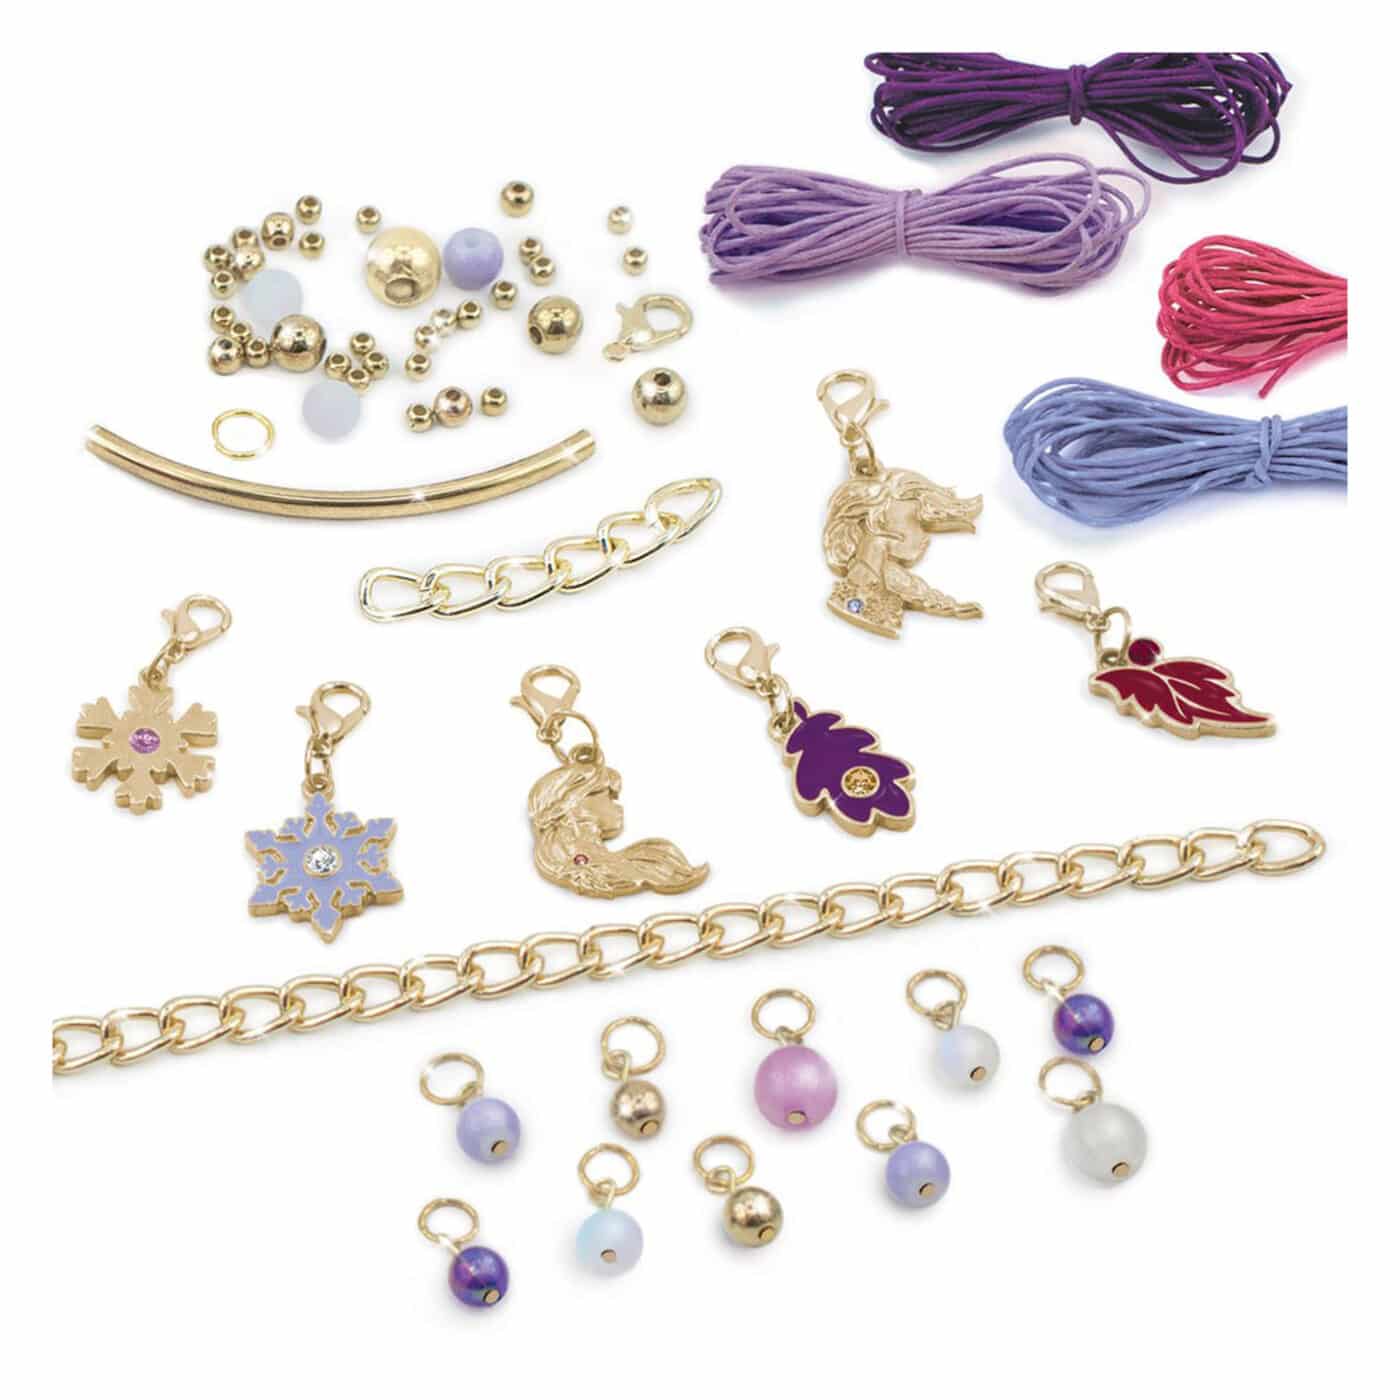 Make It Real Disney Frozen 2 Swarovski Crystal Dreams Jewellery